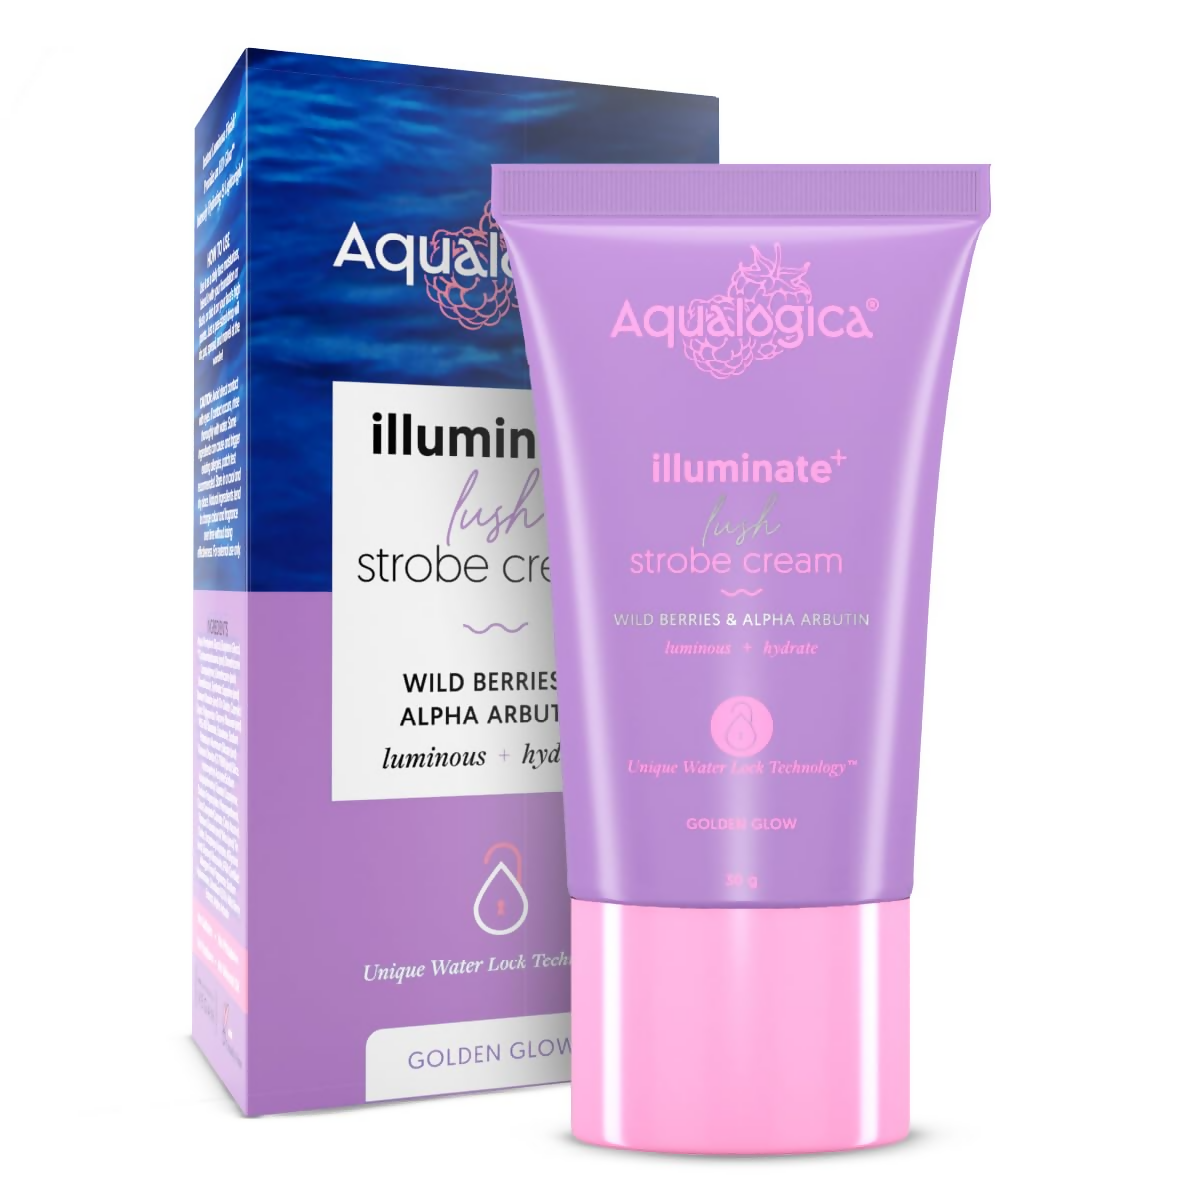 Aqualogica Illuminate+ Lush Strobe Cream